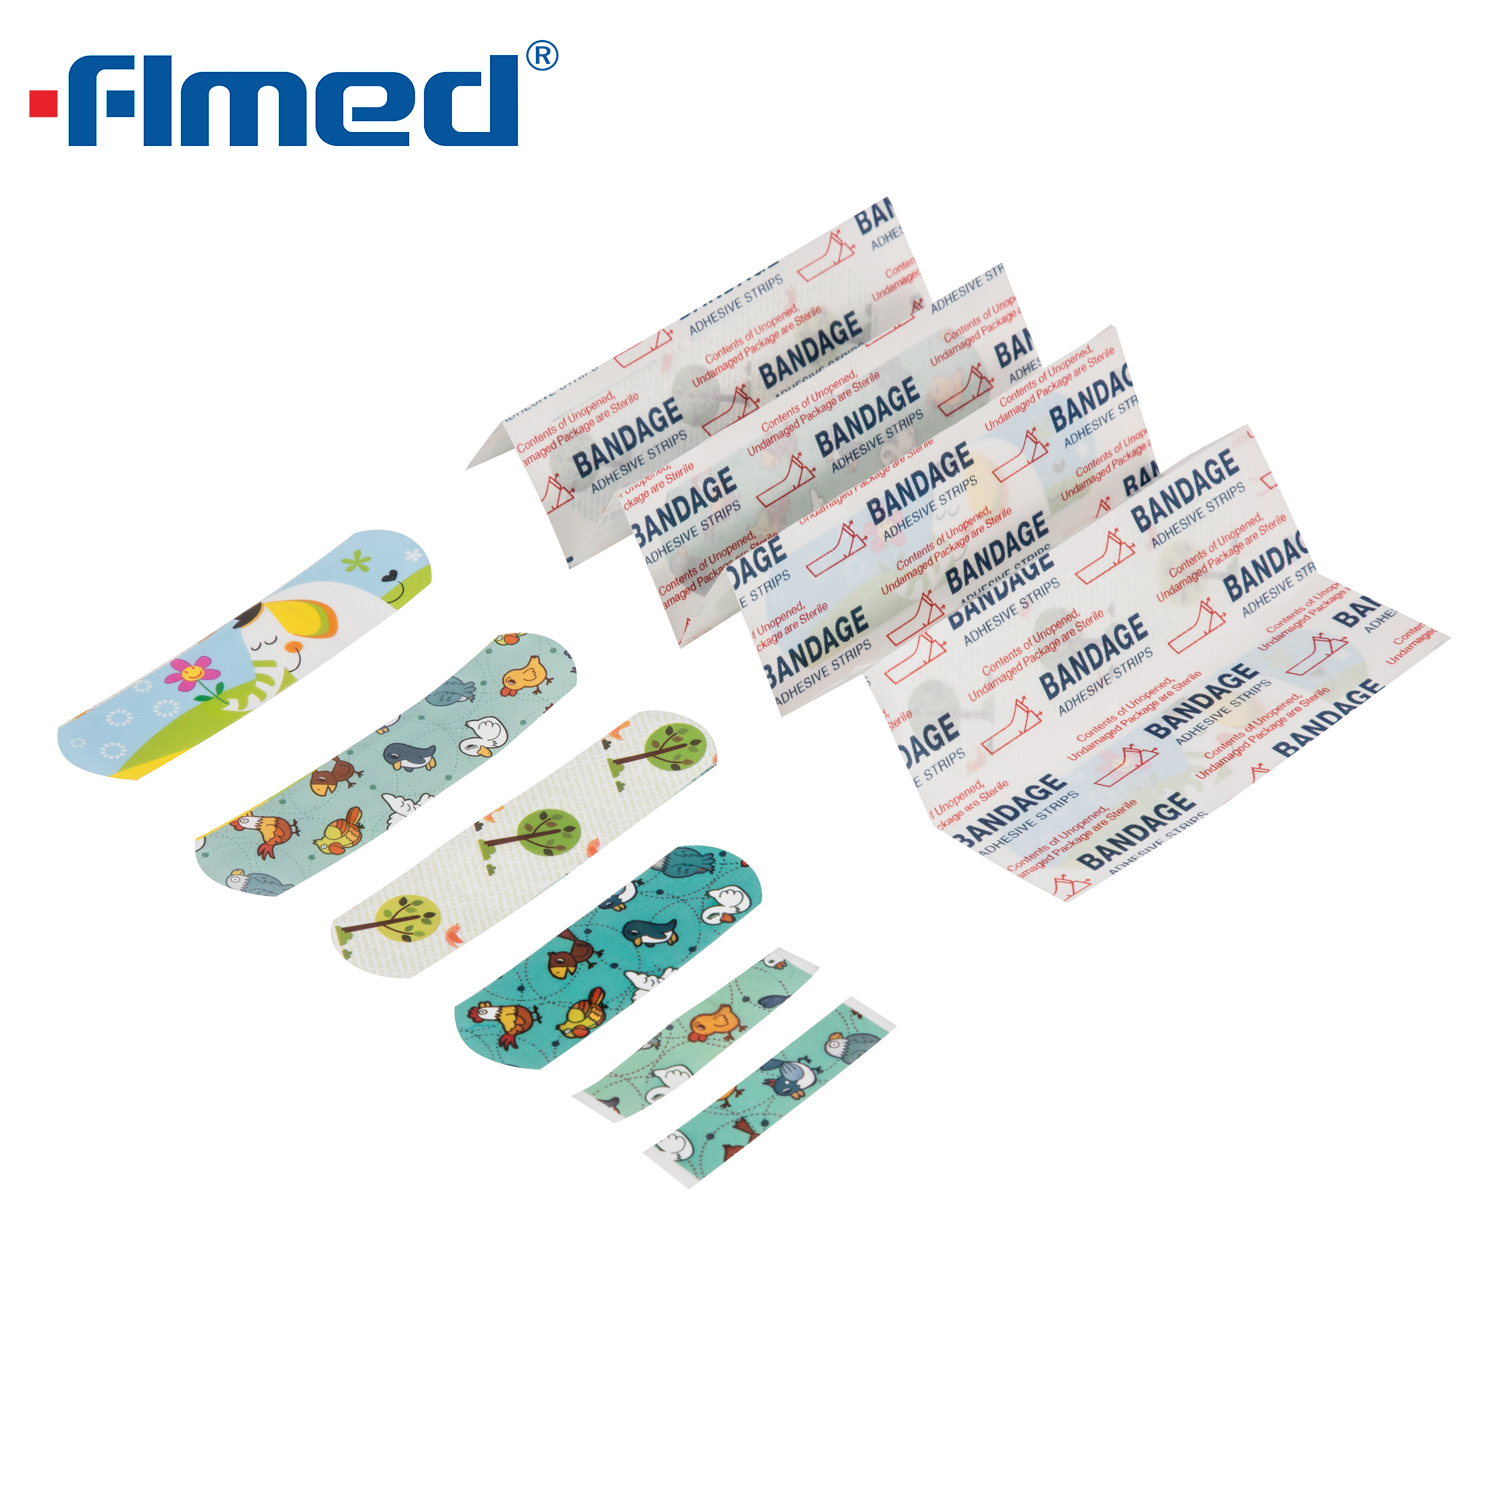 Bandagens adesivas de gesso feridas Caracteres Bandaids e Bandrages for Kids 